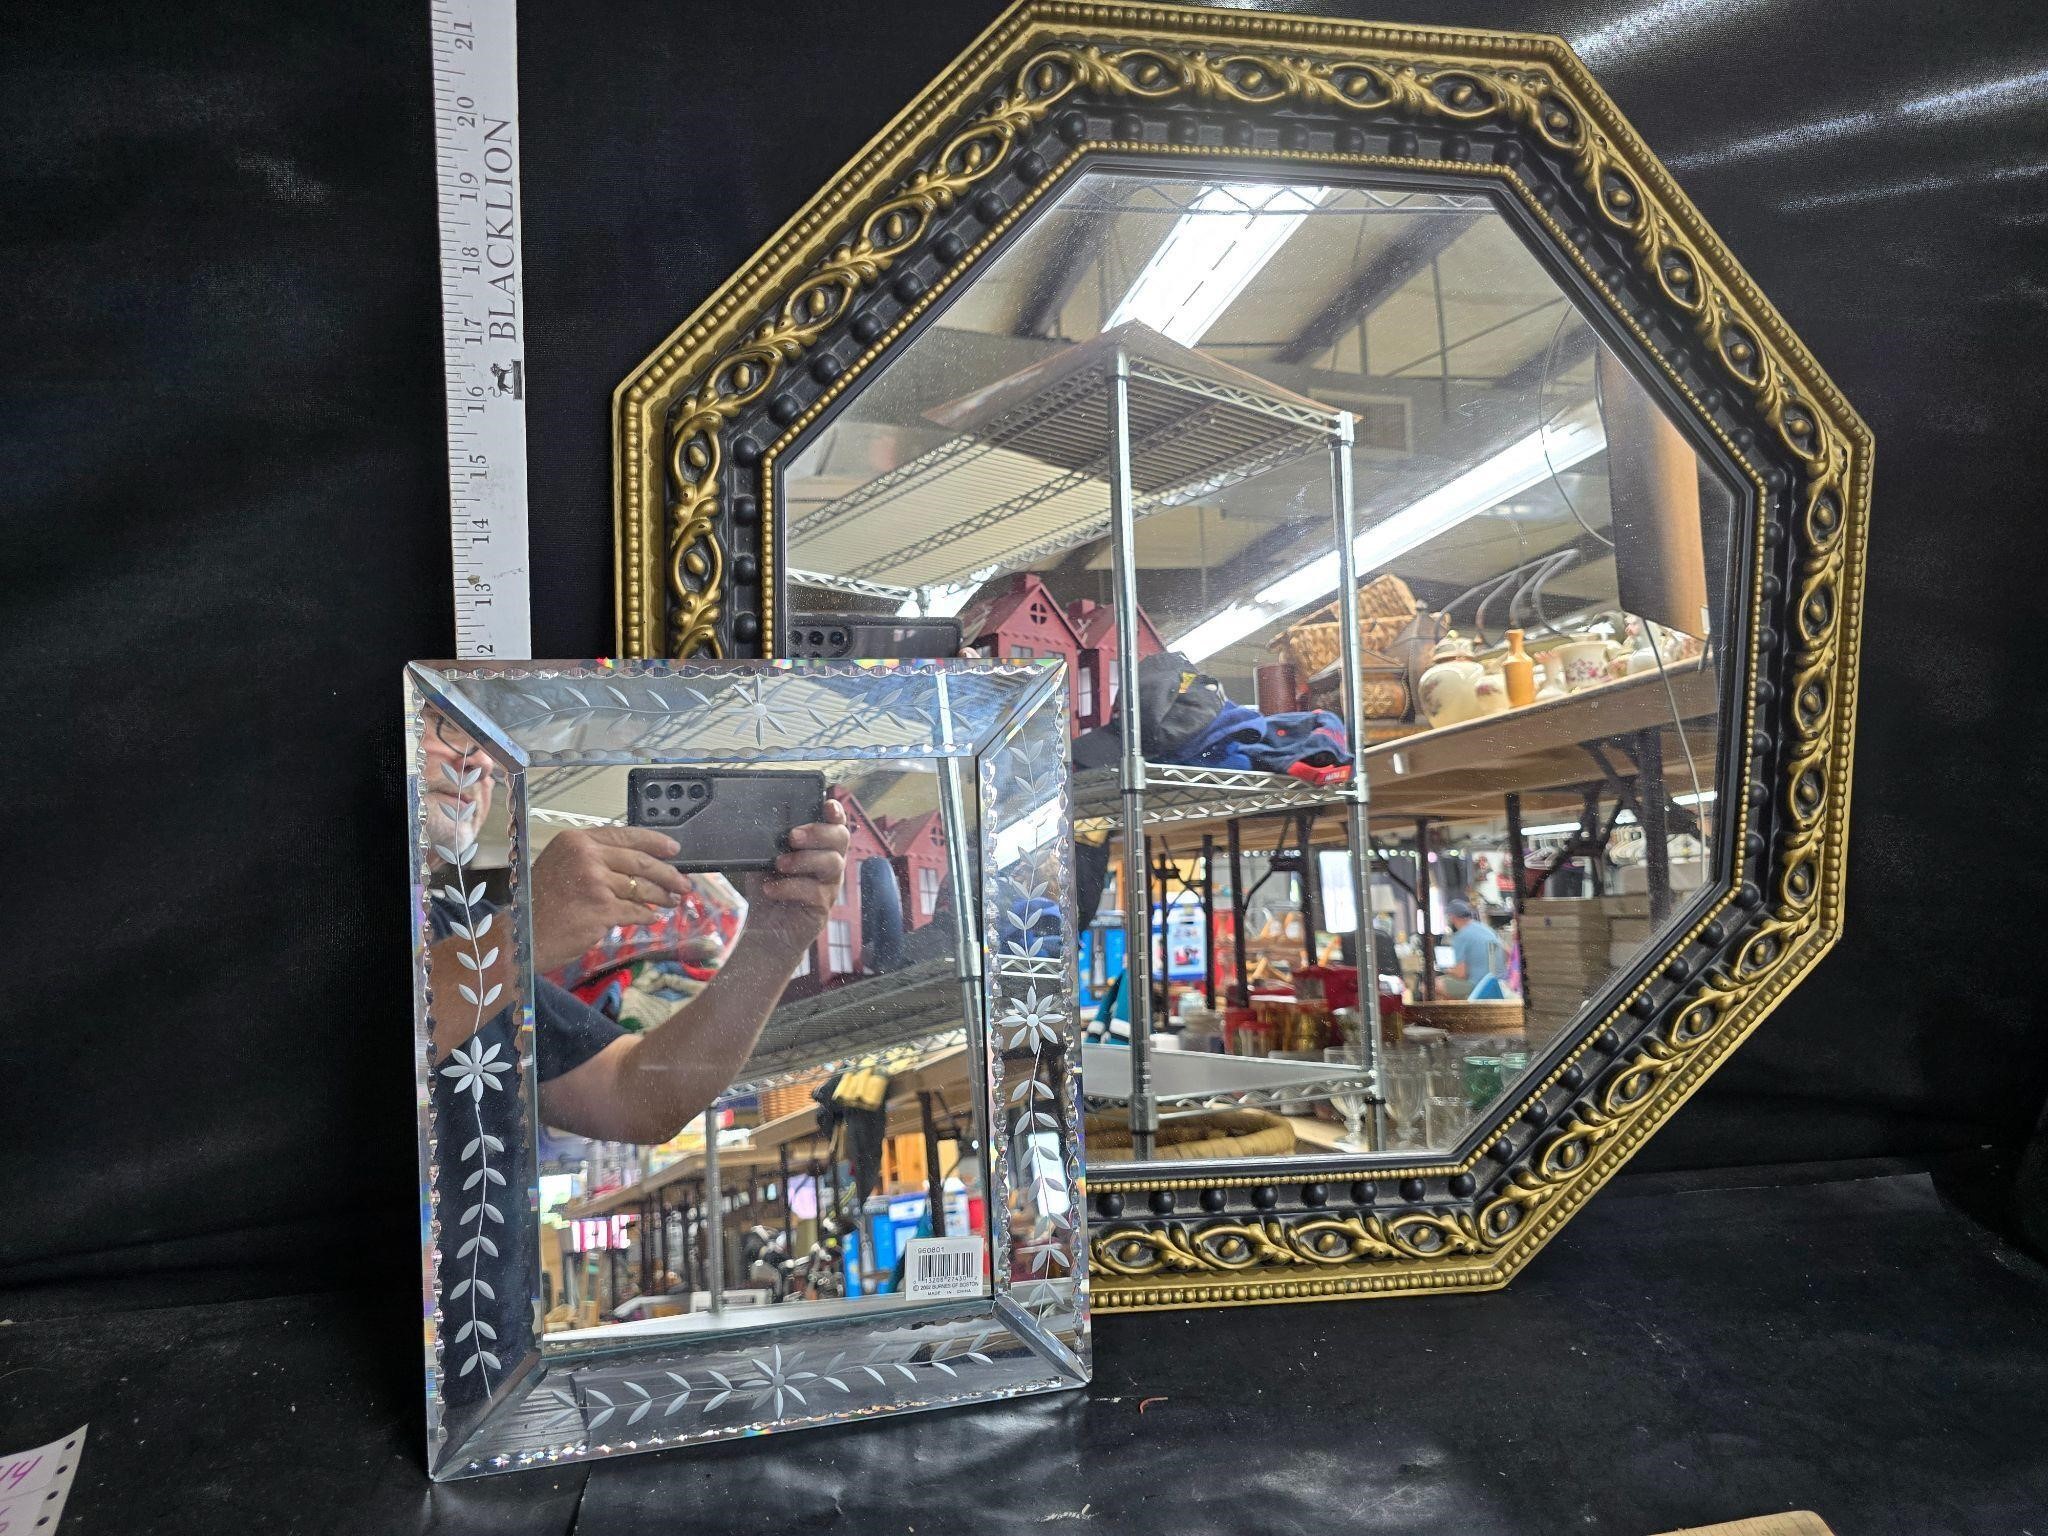 Pair of mirrors